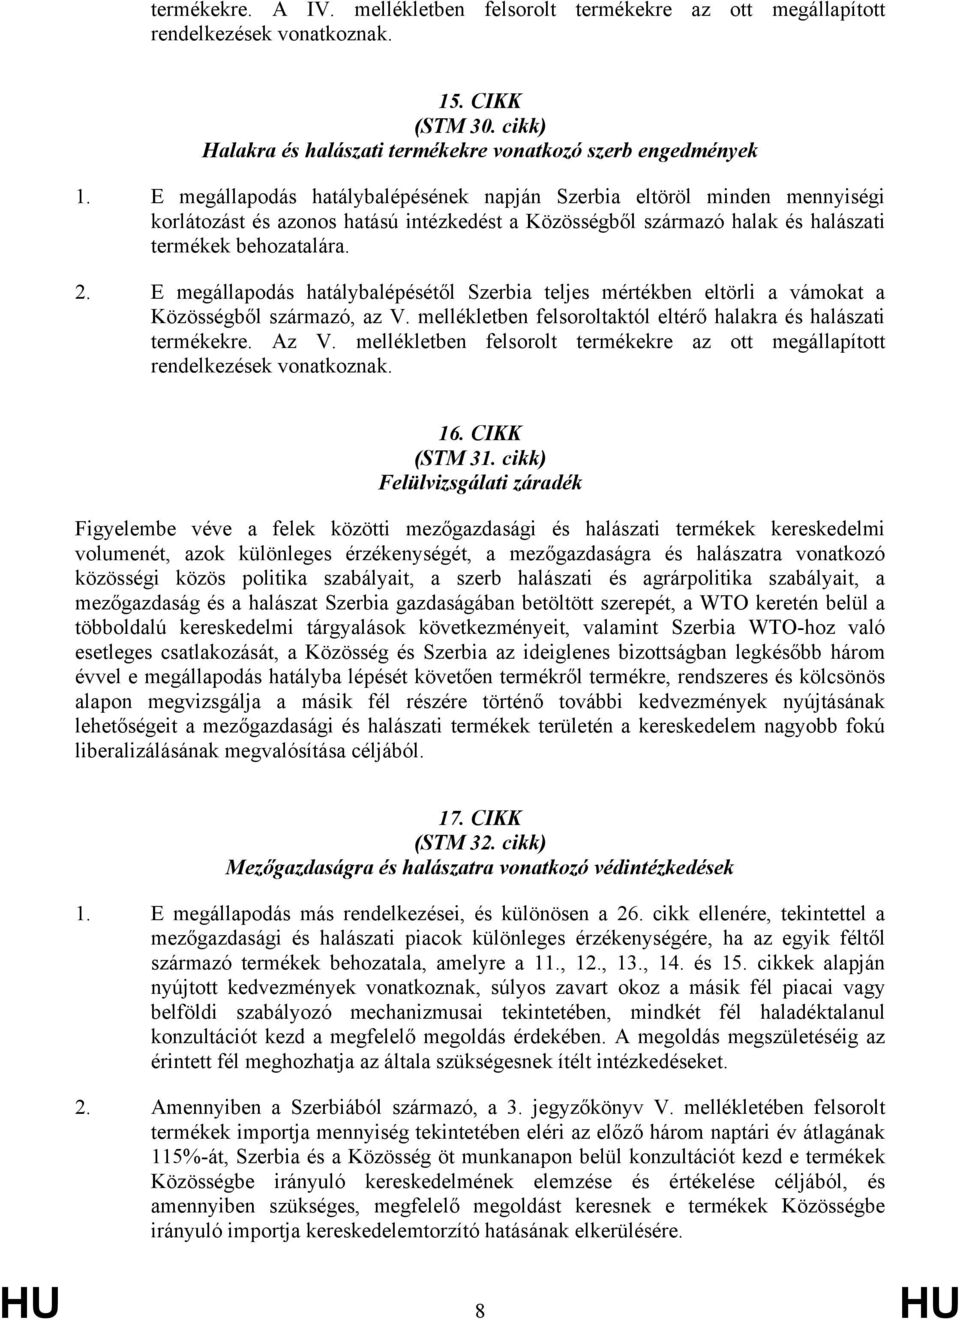 E megállapodás hatálybalépésétől Szerbia teljes mértékben eltörli a vámokat a Közösségből származó, az V. mellékletben felsoroltaktól eltérő halakra és halászati termékekre. Az V.